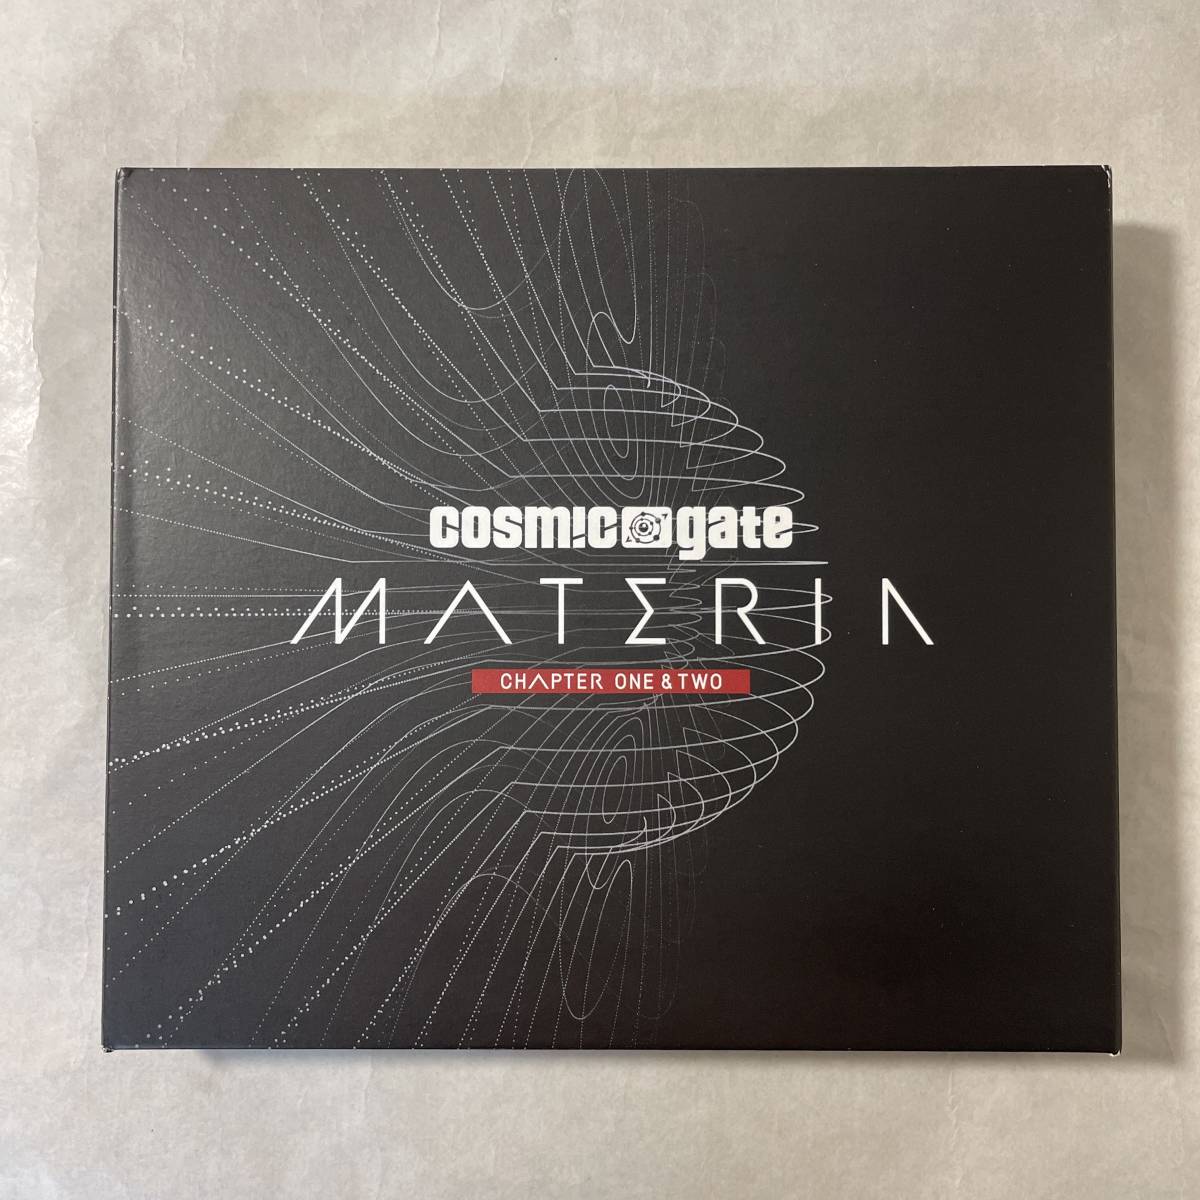 Cosmic Gate Materia Chapter One & Two コズミック・ゲート 中古 CD Trance トランス ハウス EDM クラブ ダンス エレクトロニカ